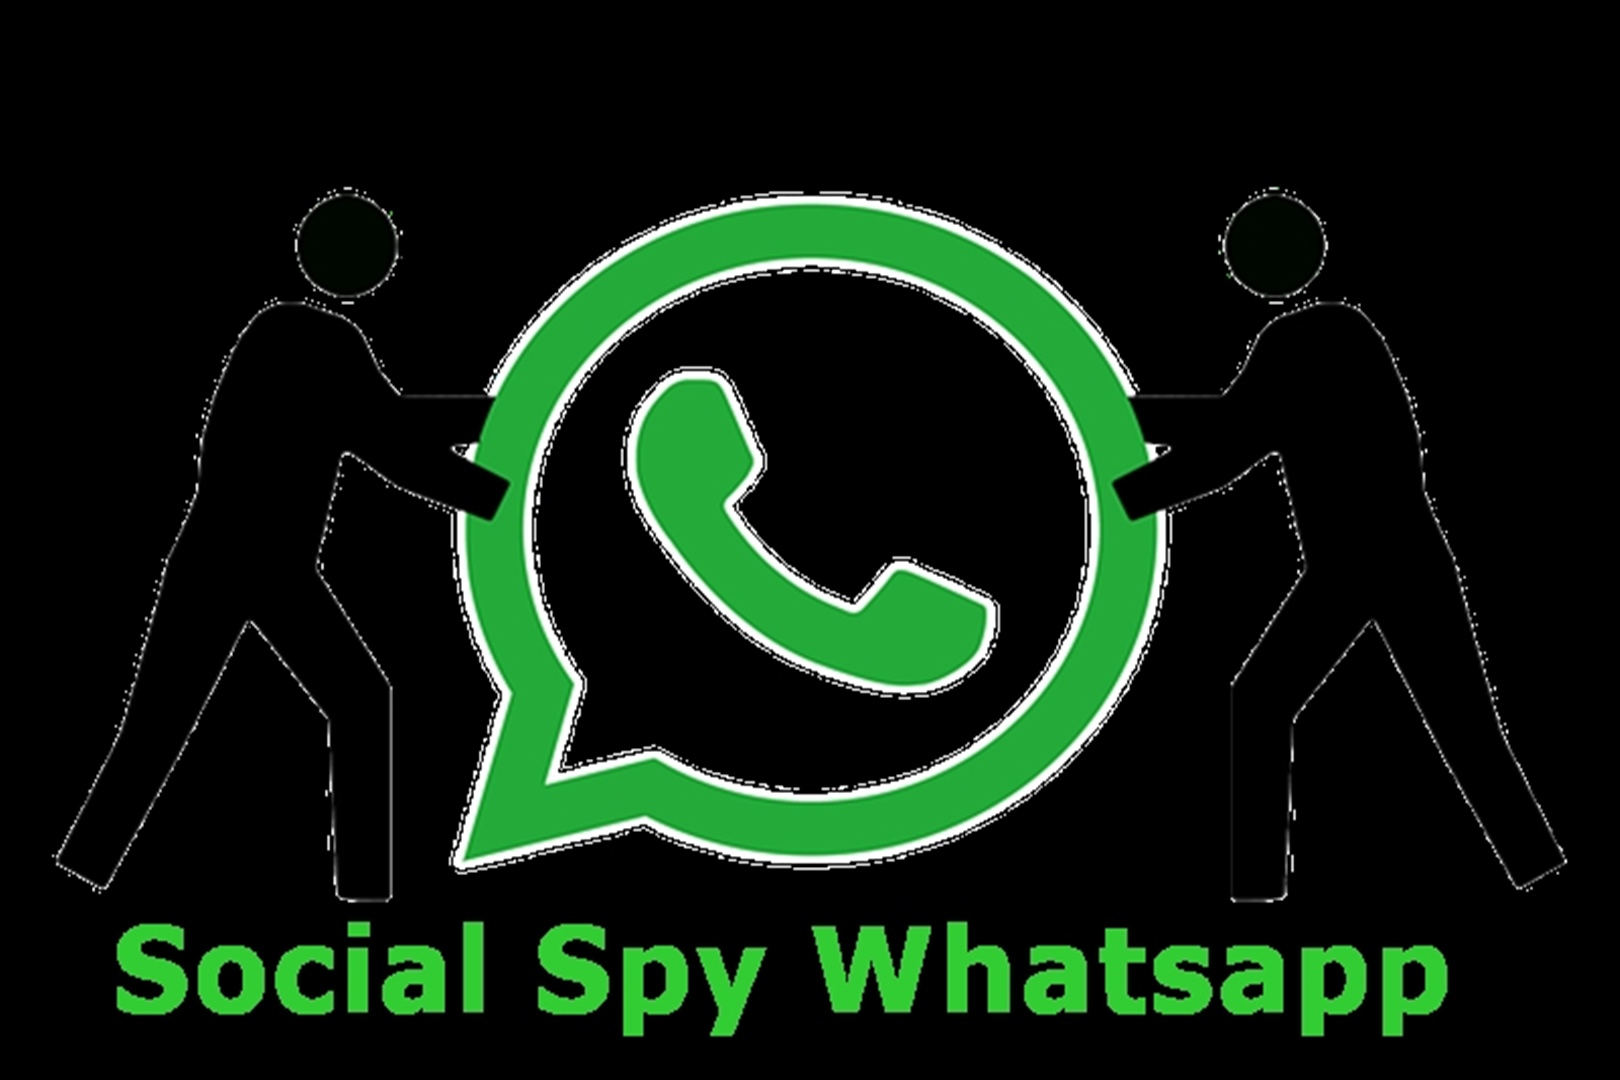 Cara Log In Social Spy Whatsapp Lengkap dengan Link Download, Sadap Mudah Hanya Butuh No Hp!